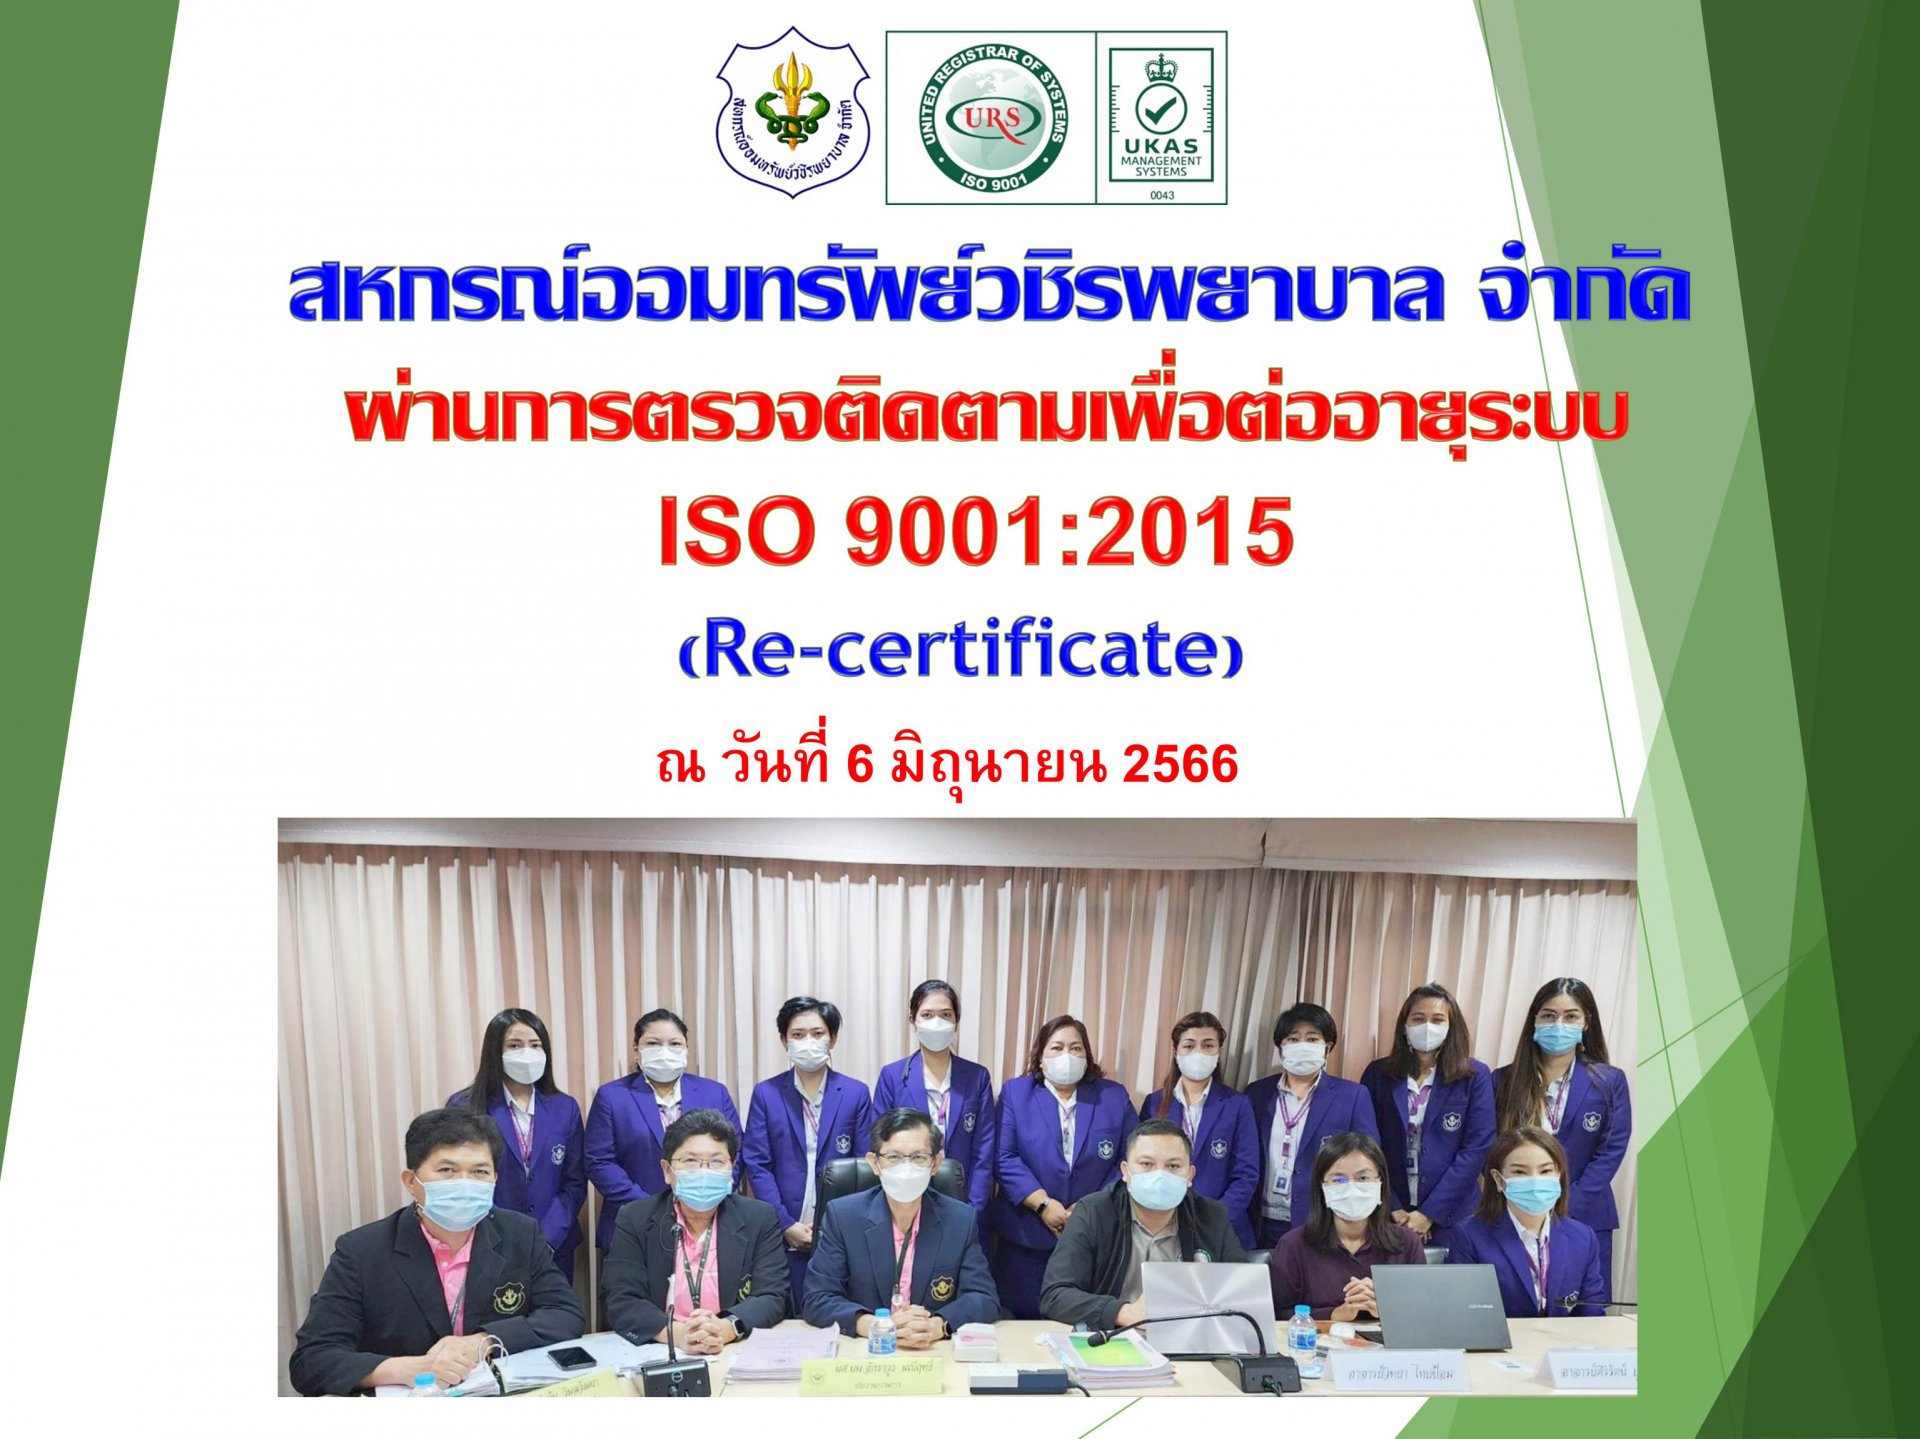 สหกรณ์ฯ ผ่านการตรวจติดตามเพื่อต่ออายุระบบ ISO 9001:2015 (Re-certificate)